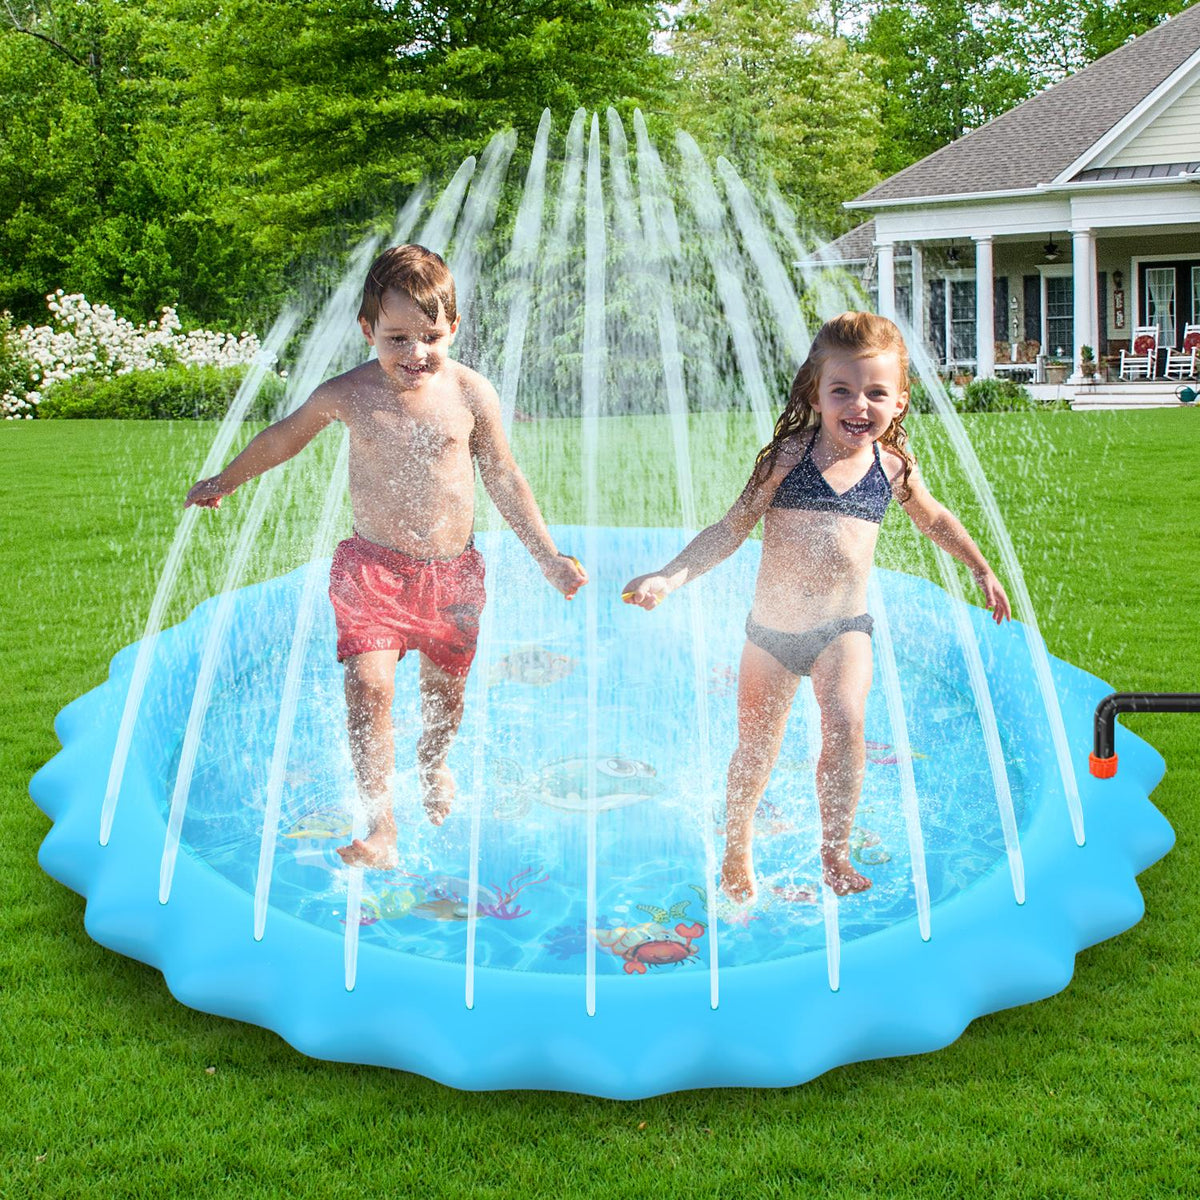 Inflatable Sprinkler